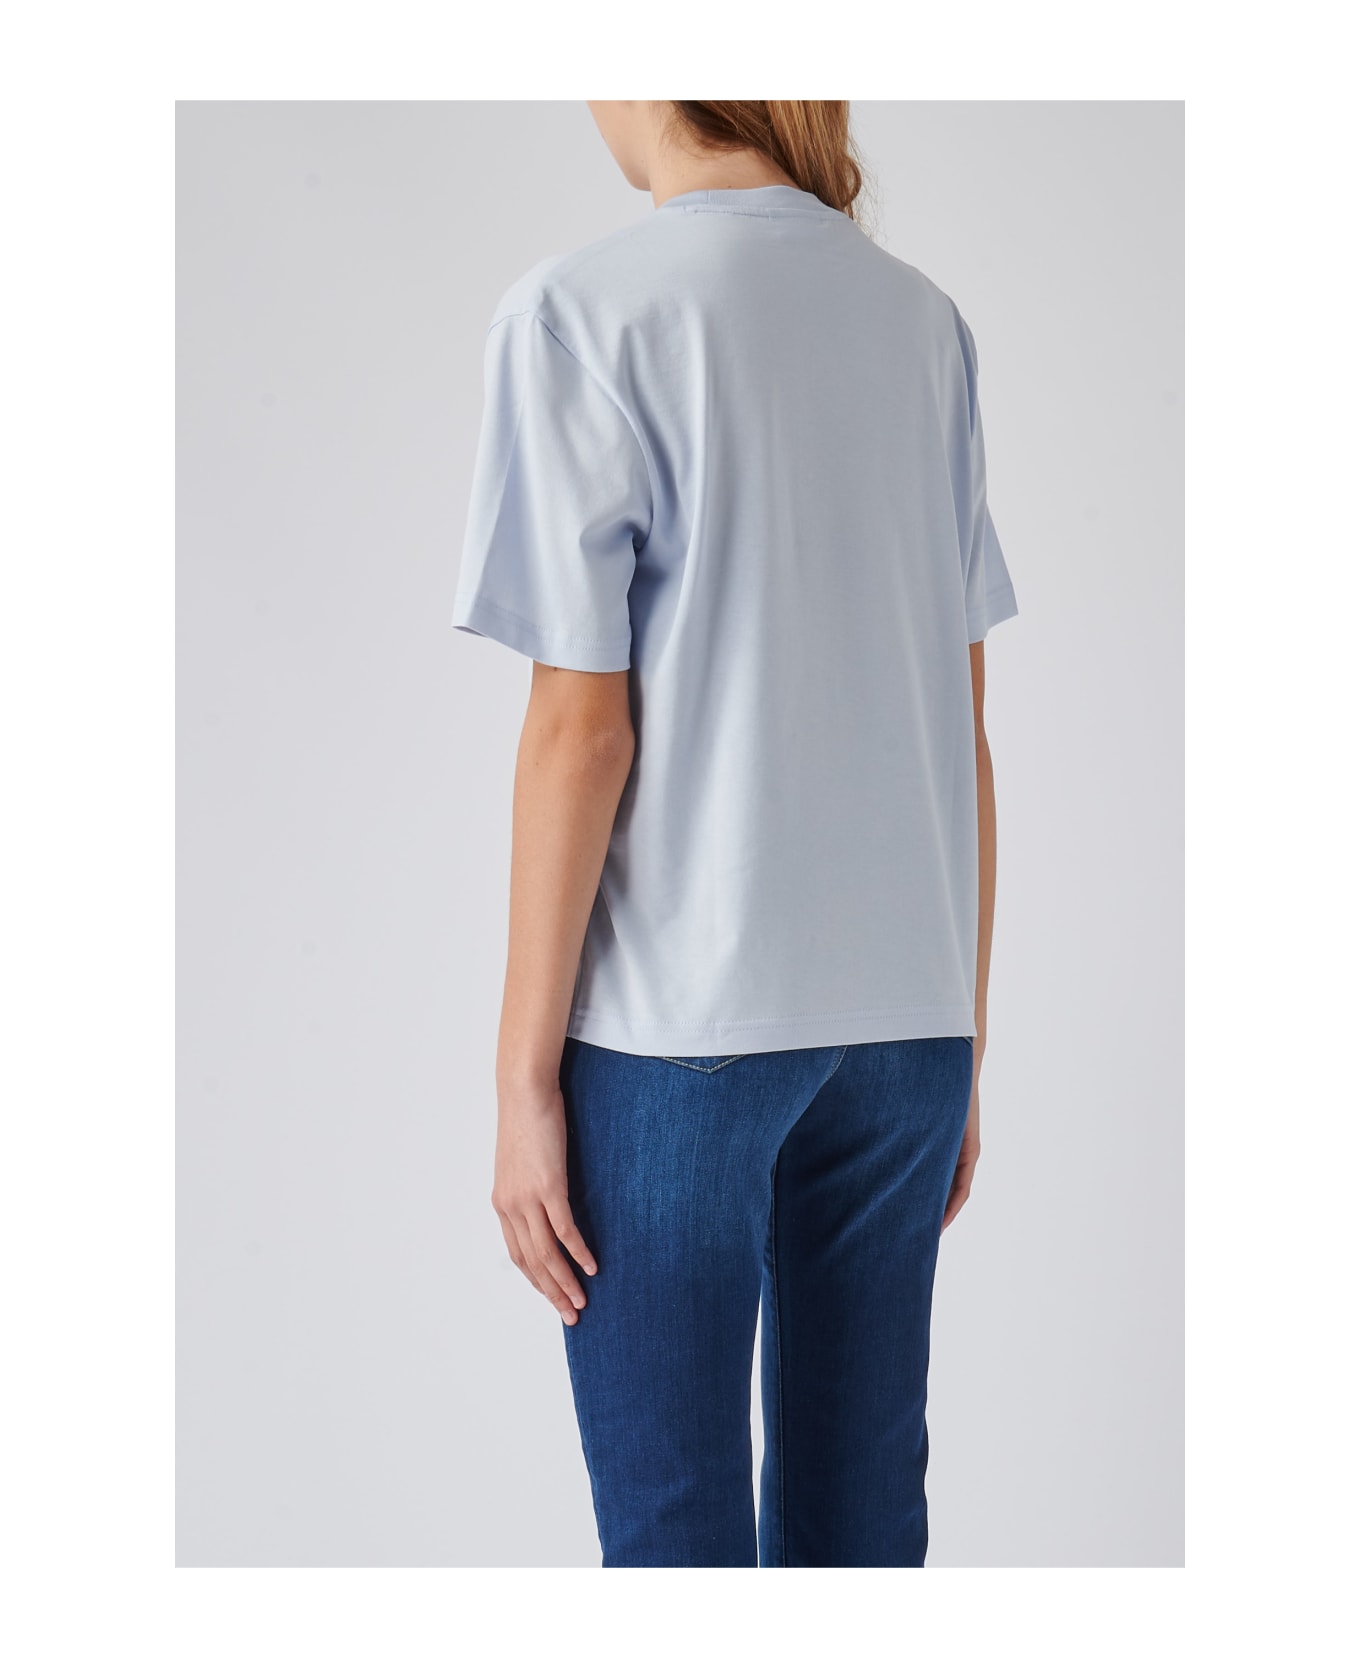 Lacoste Cotton T-shirt - CERULEO